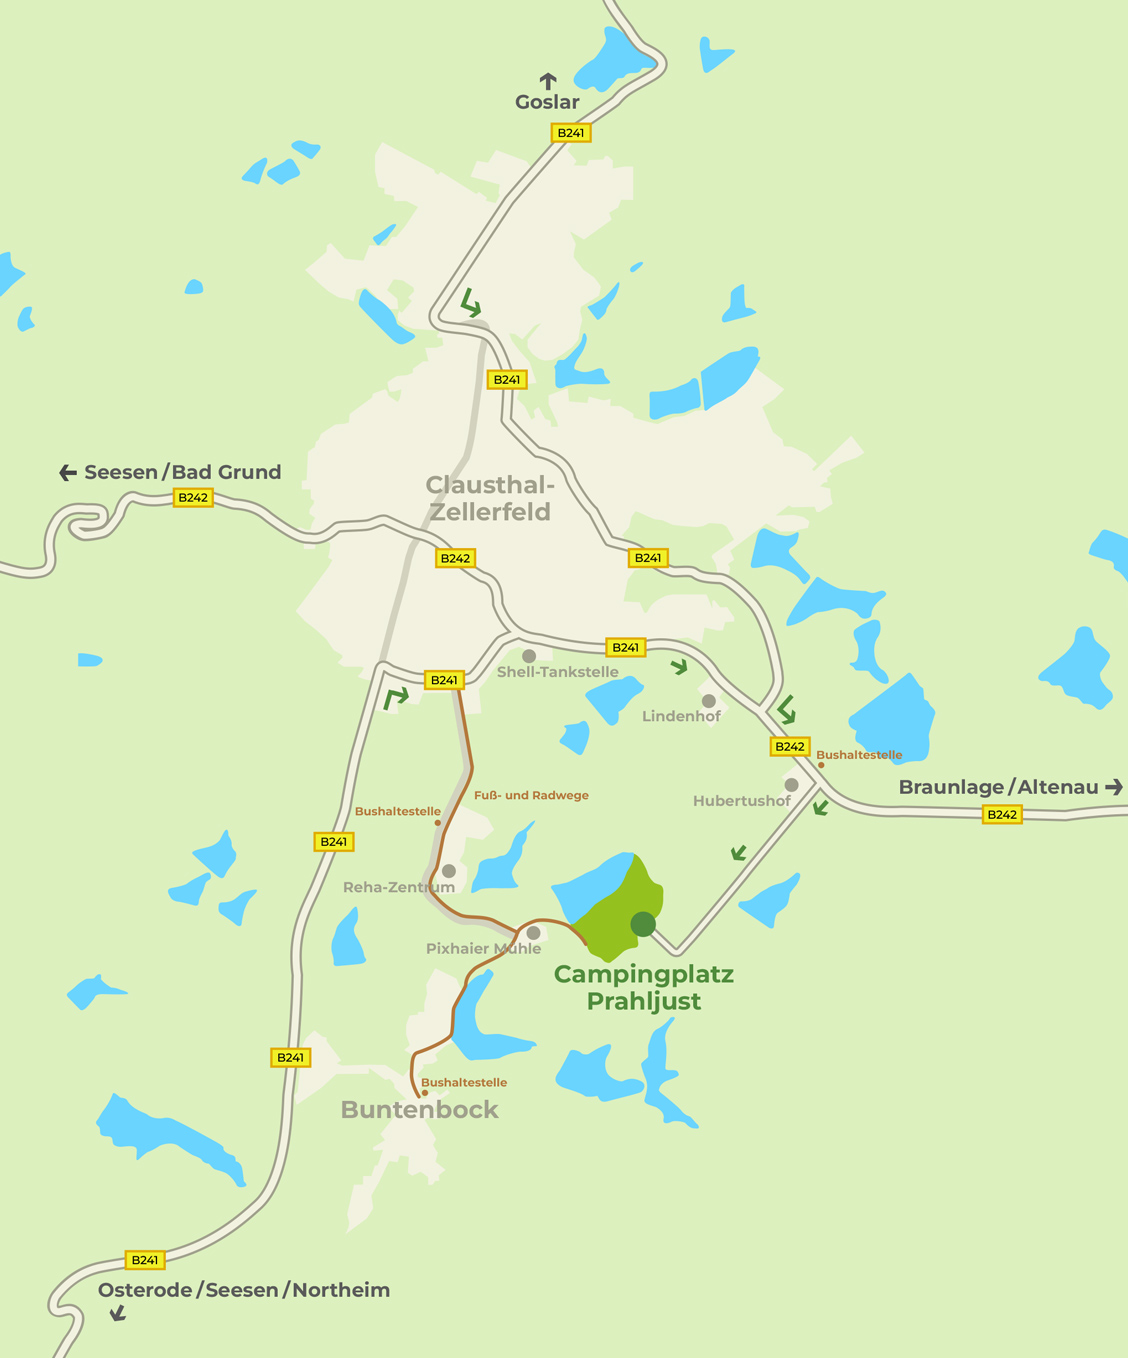 Anfahrtsbeschreibung von Clausthal-Zellerfeld und Buntenbock zum Campingplatz Prahljust im Harz